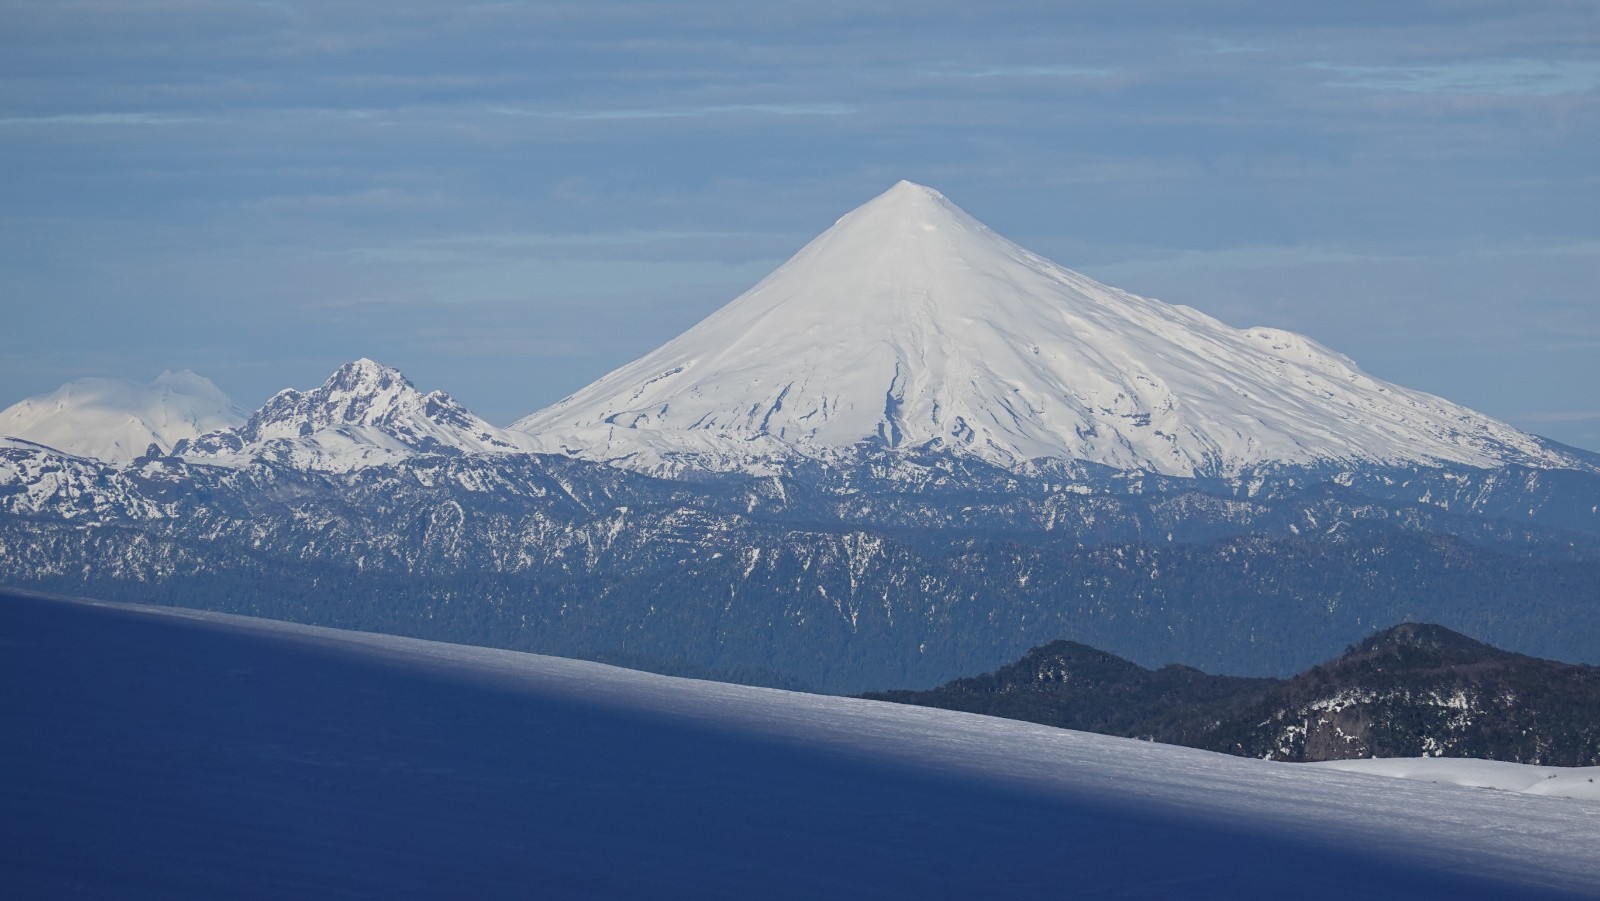 Le volcan Osorno au téléobjectif : on voir bien l'itinéraire de descente par le versant Est qui permet de skier depuis le sommet en évitant les champignons de glace présents en versant Ouest et Nord